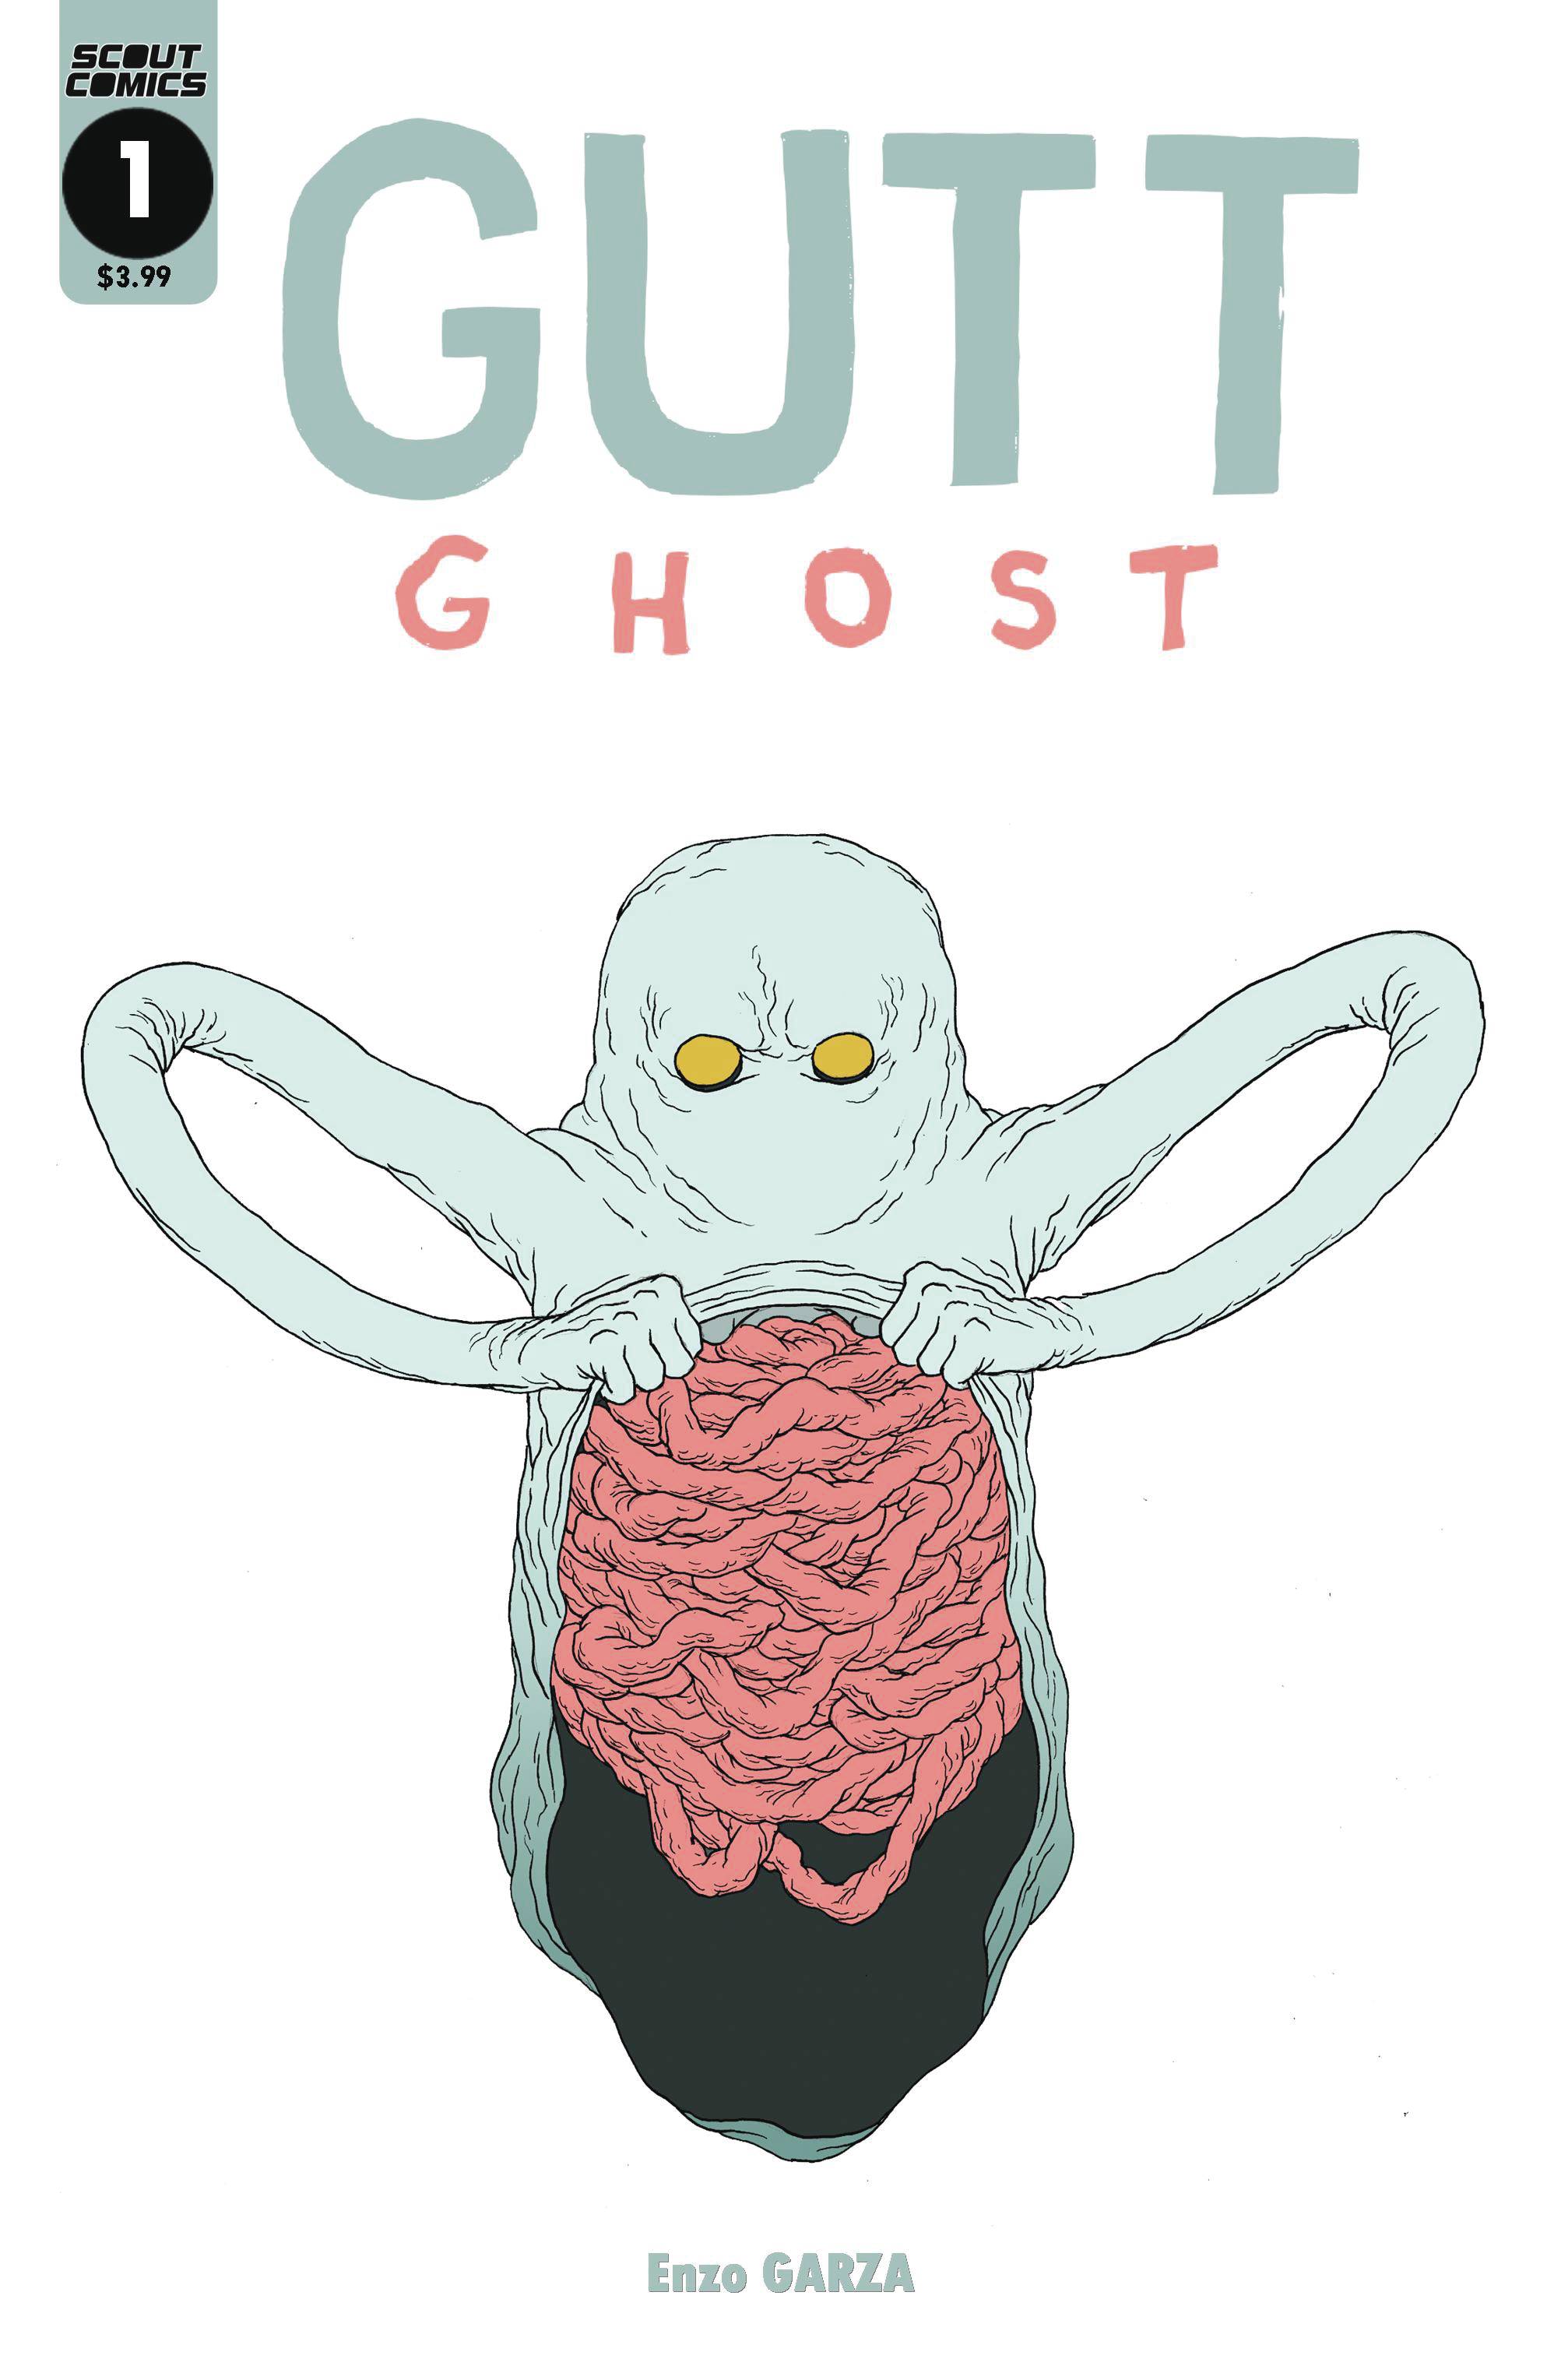 Gutt Ghost Till We Meet Again #1 - State of Comics